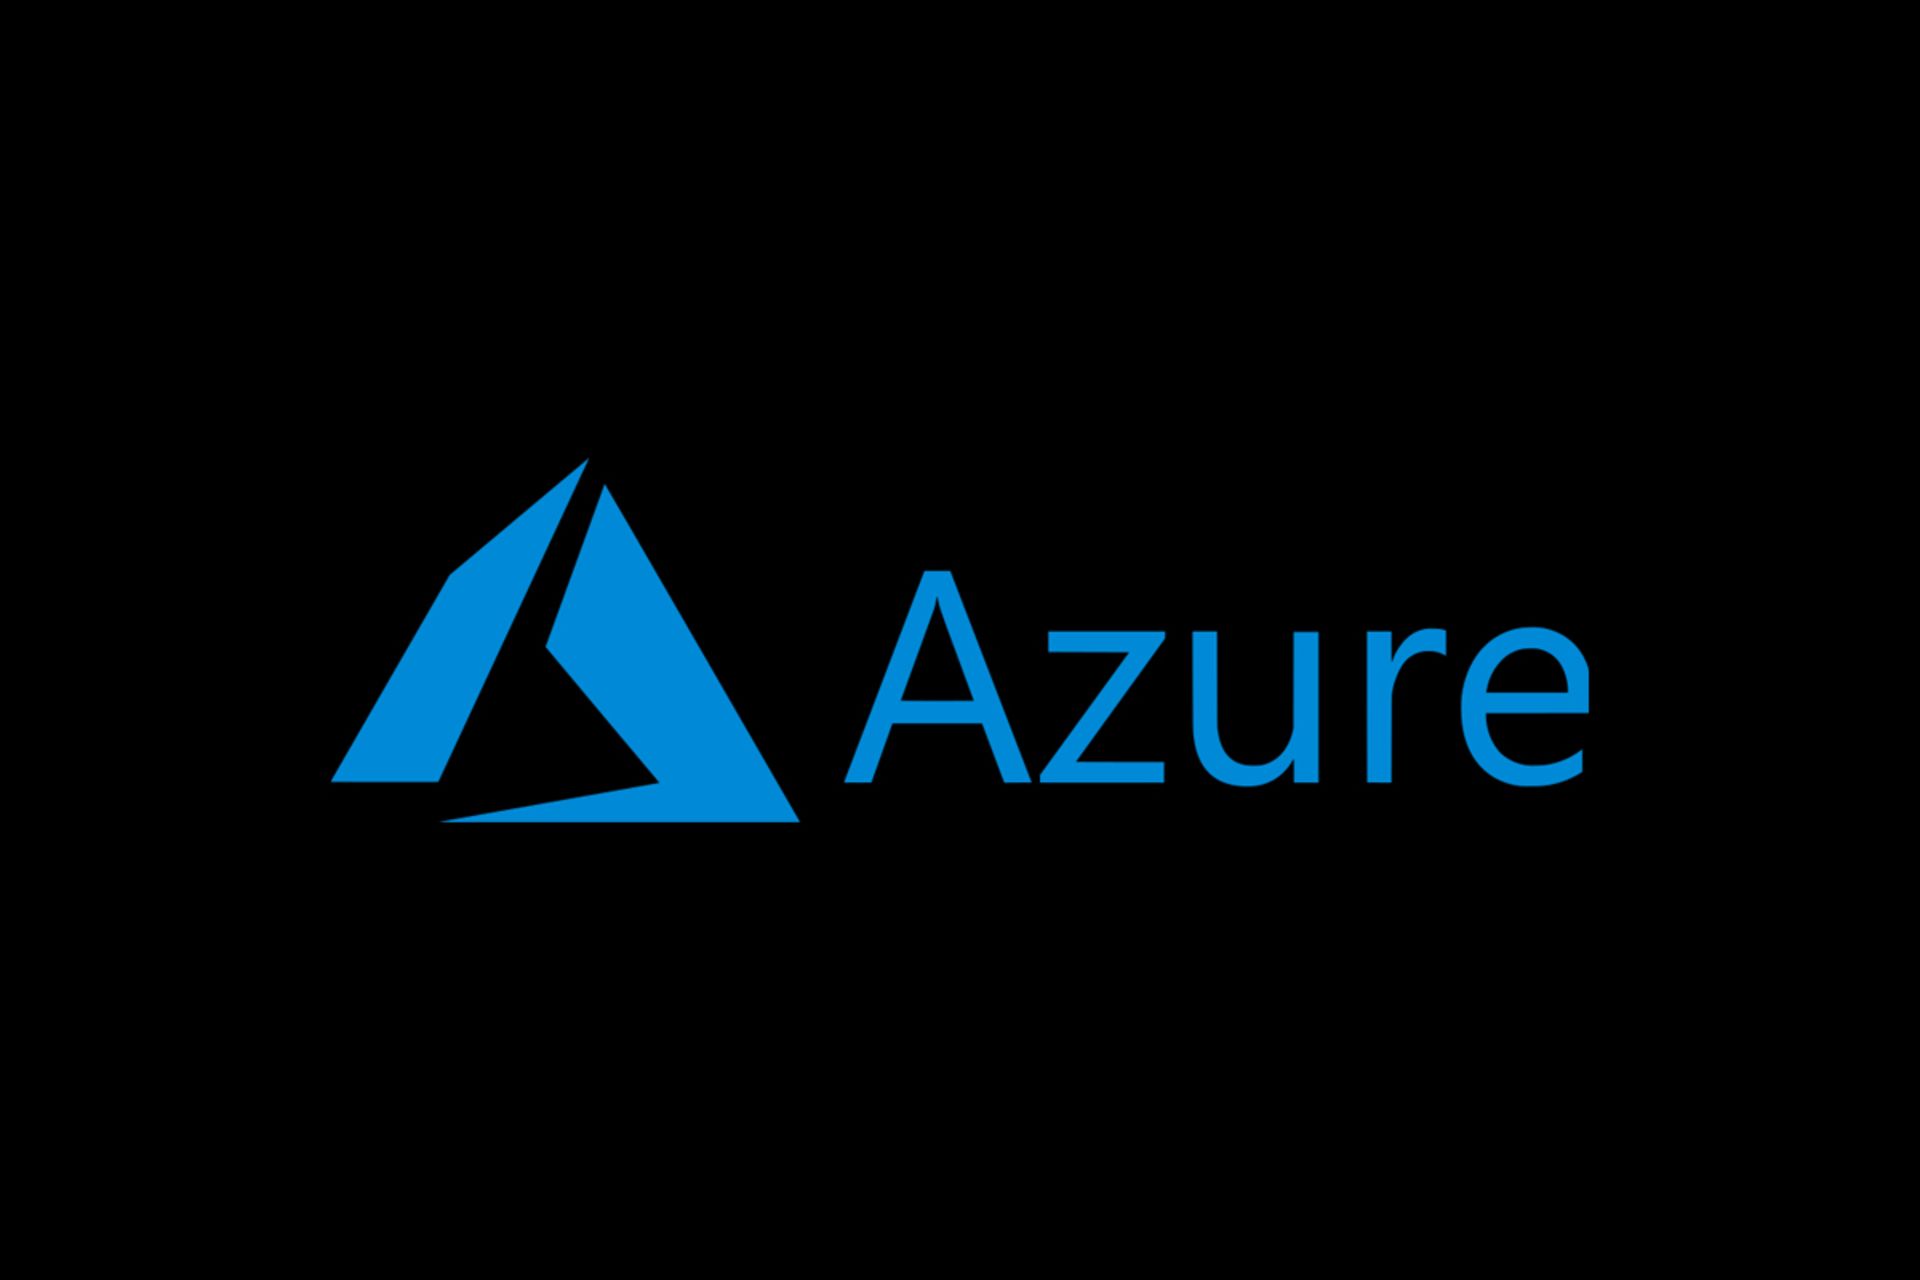 مرجع متخصصين ايران لوگو مايكروسافت آژور / Microsoft Azure